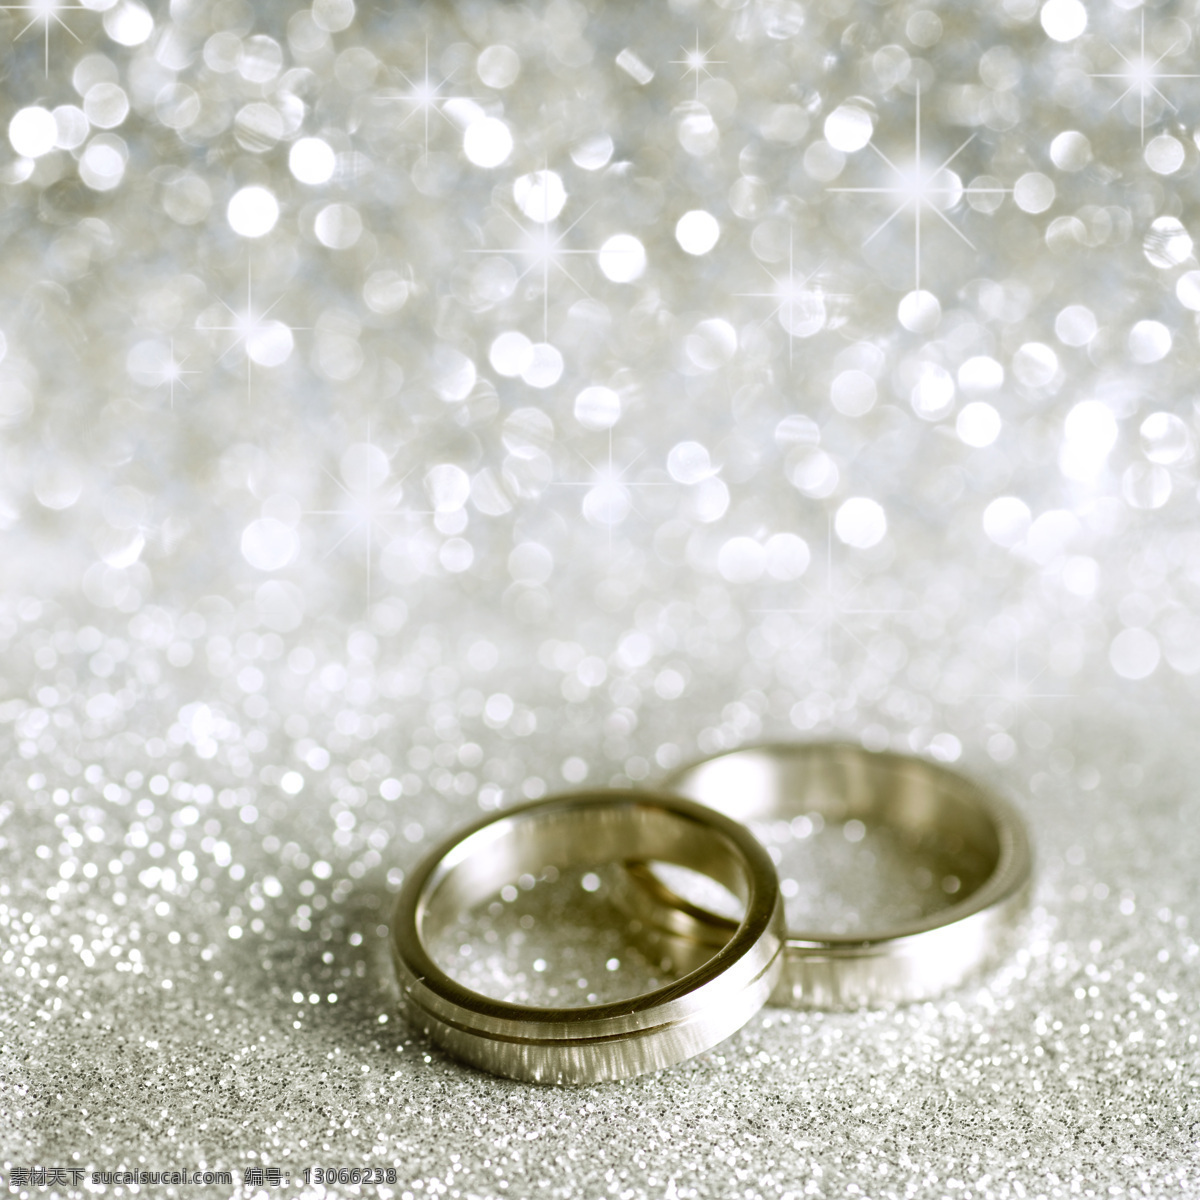 精美戒指 金色 戒指 手环 指环 首饰 戒指海报 钻石对戒 女戒 结婚女戒 珠宝 珠宝饰品 生活百科 生活素材